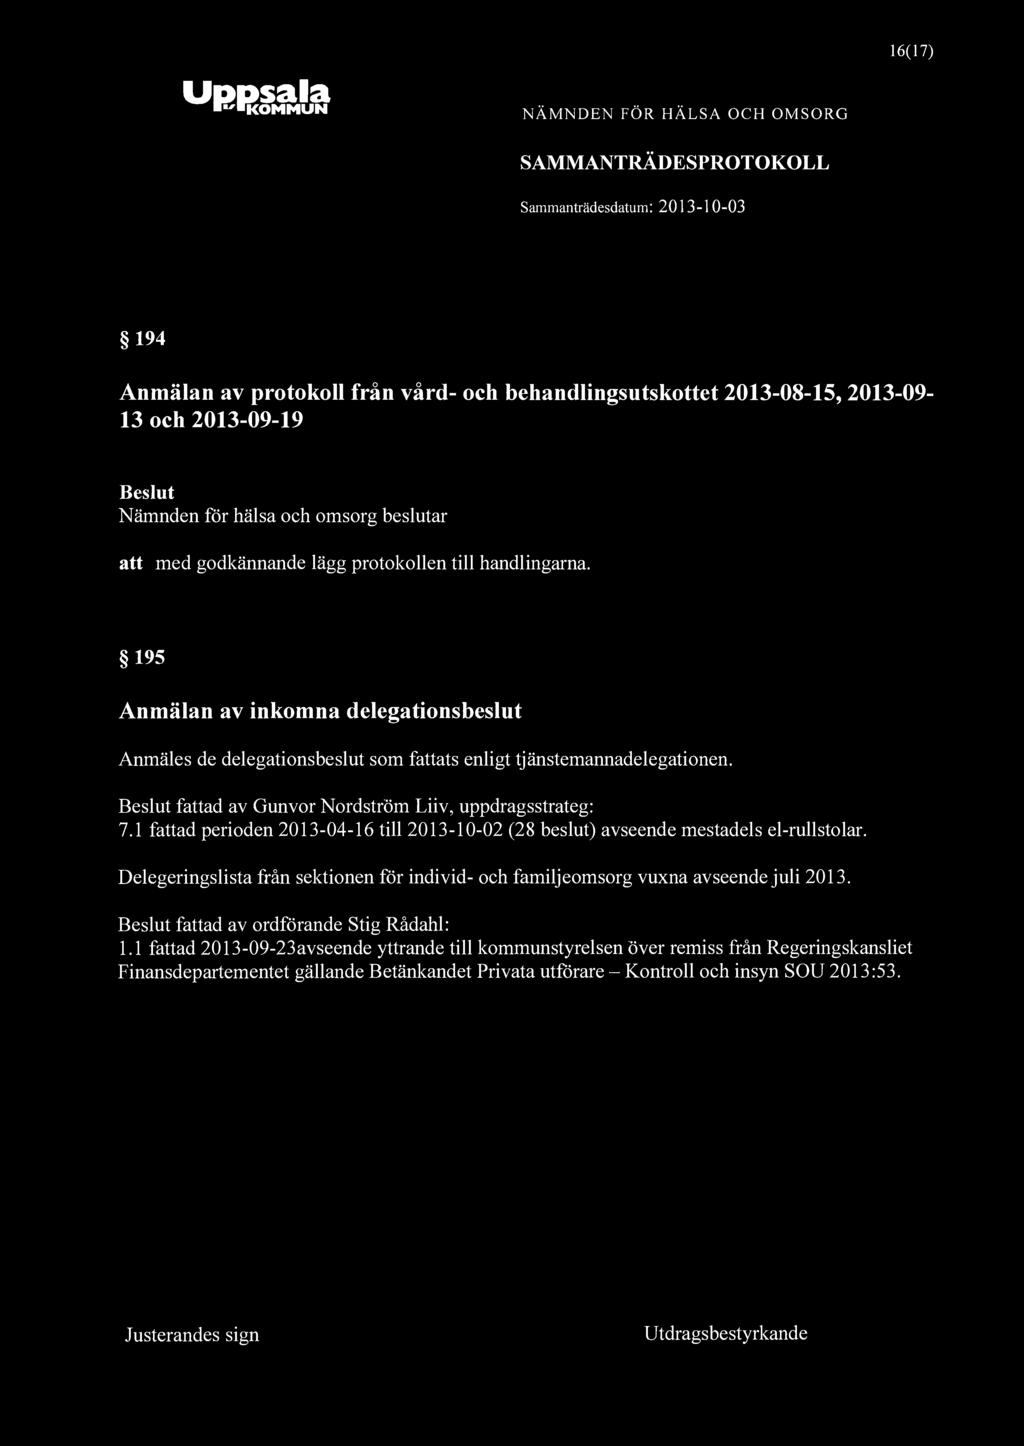 Uppsala "KOMMUN 16(17) 194 Anmälan av protokoll från vård- och behandlingsutskottet 2013-08-15, 2013-09- 13 och 2013-09-19 att med godkännande lägg protokollen till handlingarna.